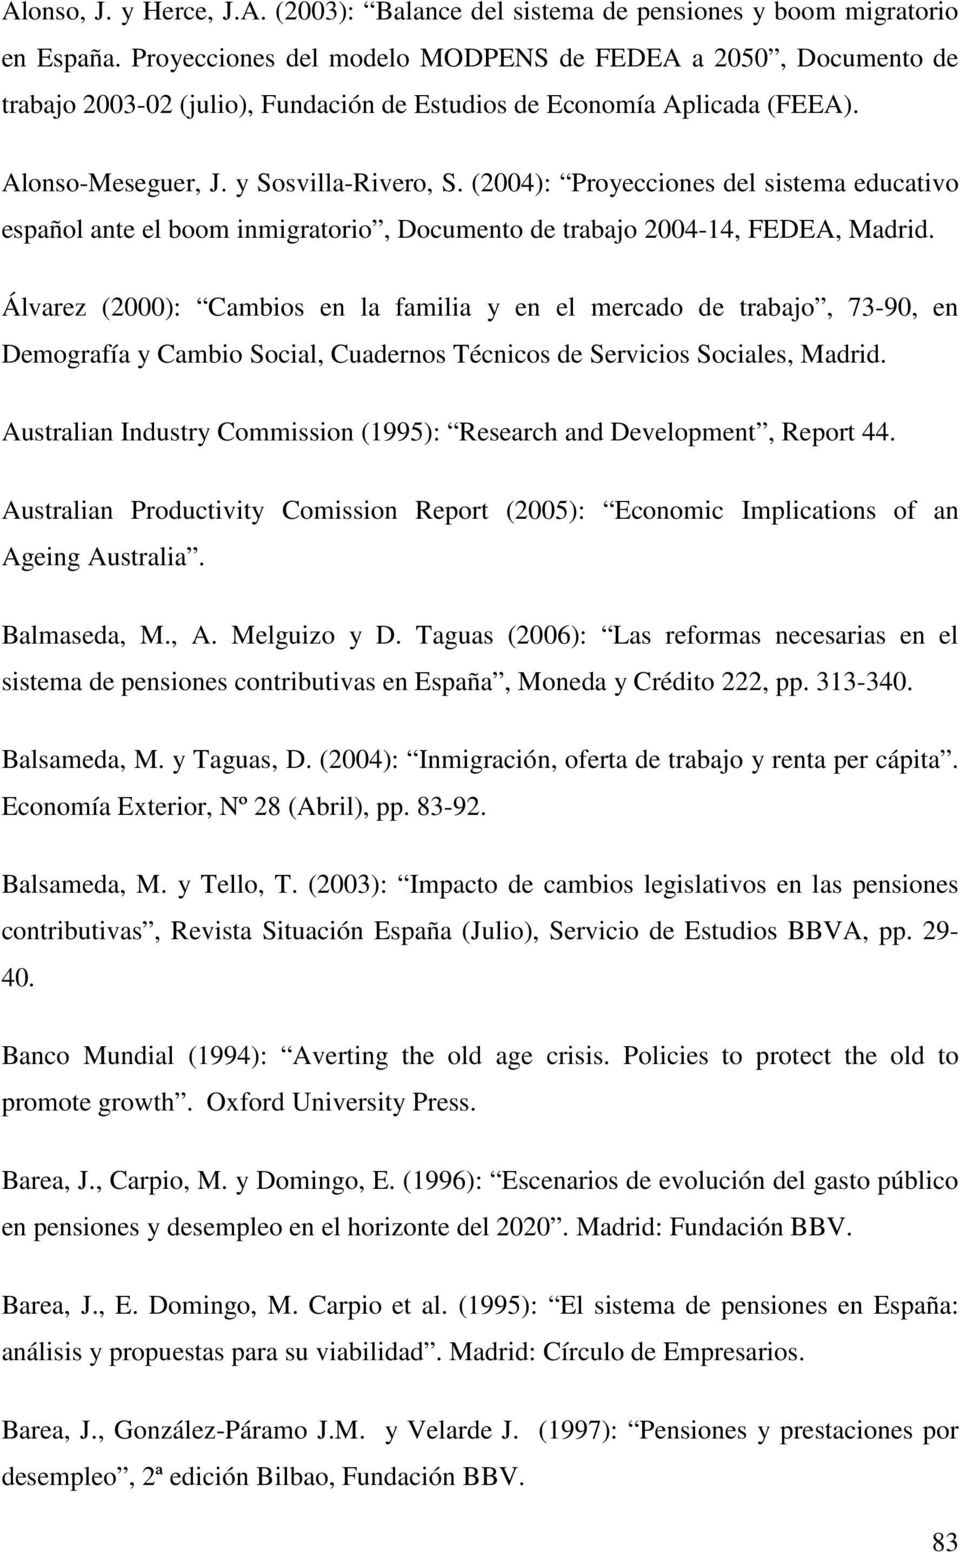 (2004): Proyecciones del sistema educativo español ante el boom inmigratorio, Documento de trabajo 2004-14, FEDEA, Madrid.